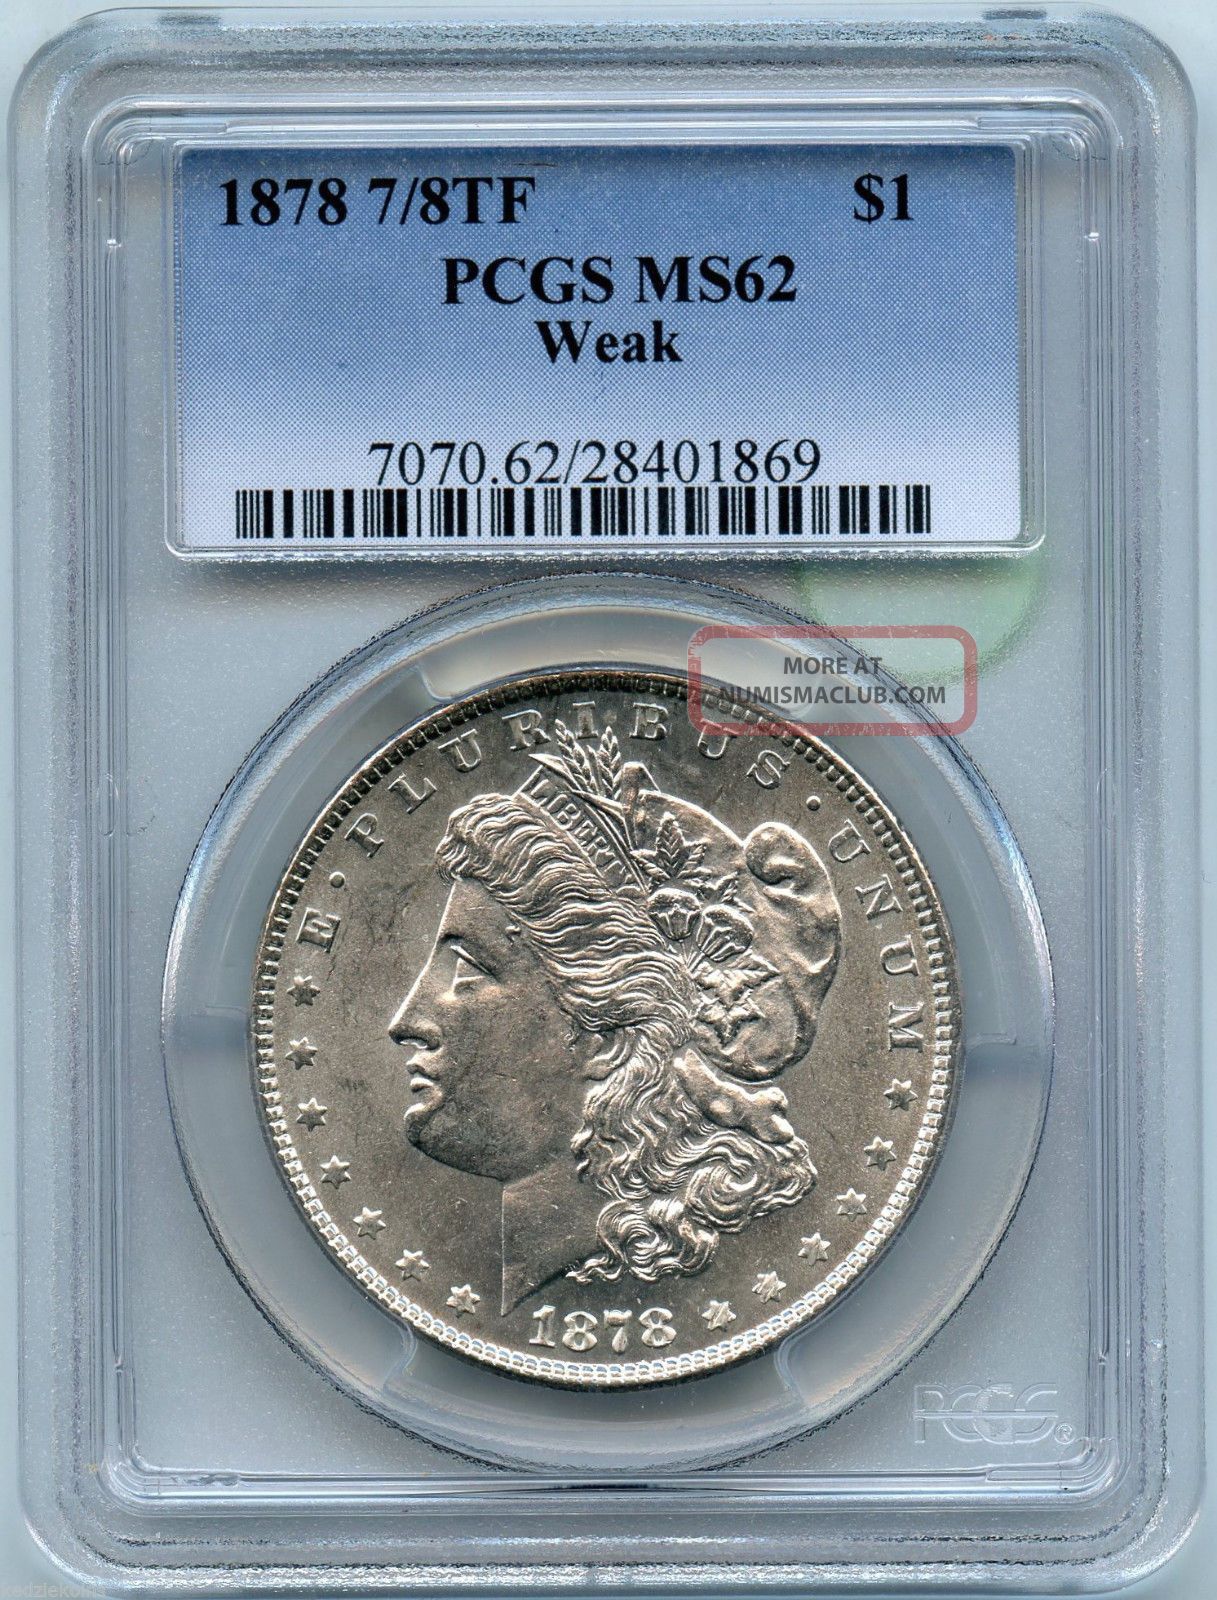 1878 7/8tf Pcgs Ms 62 Weak Morgan Silver Dollar - M1s Kn979